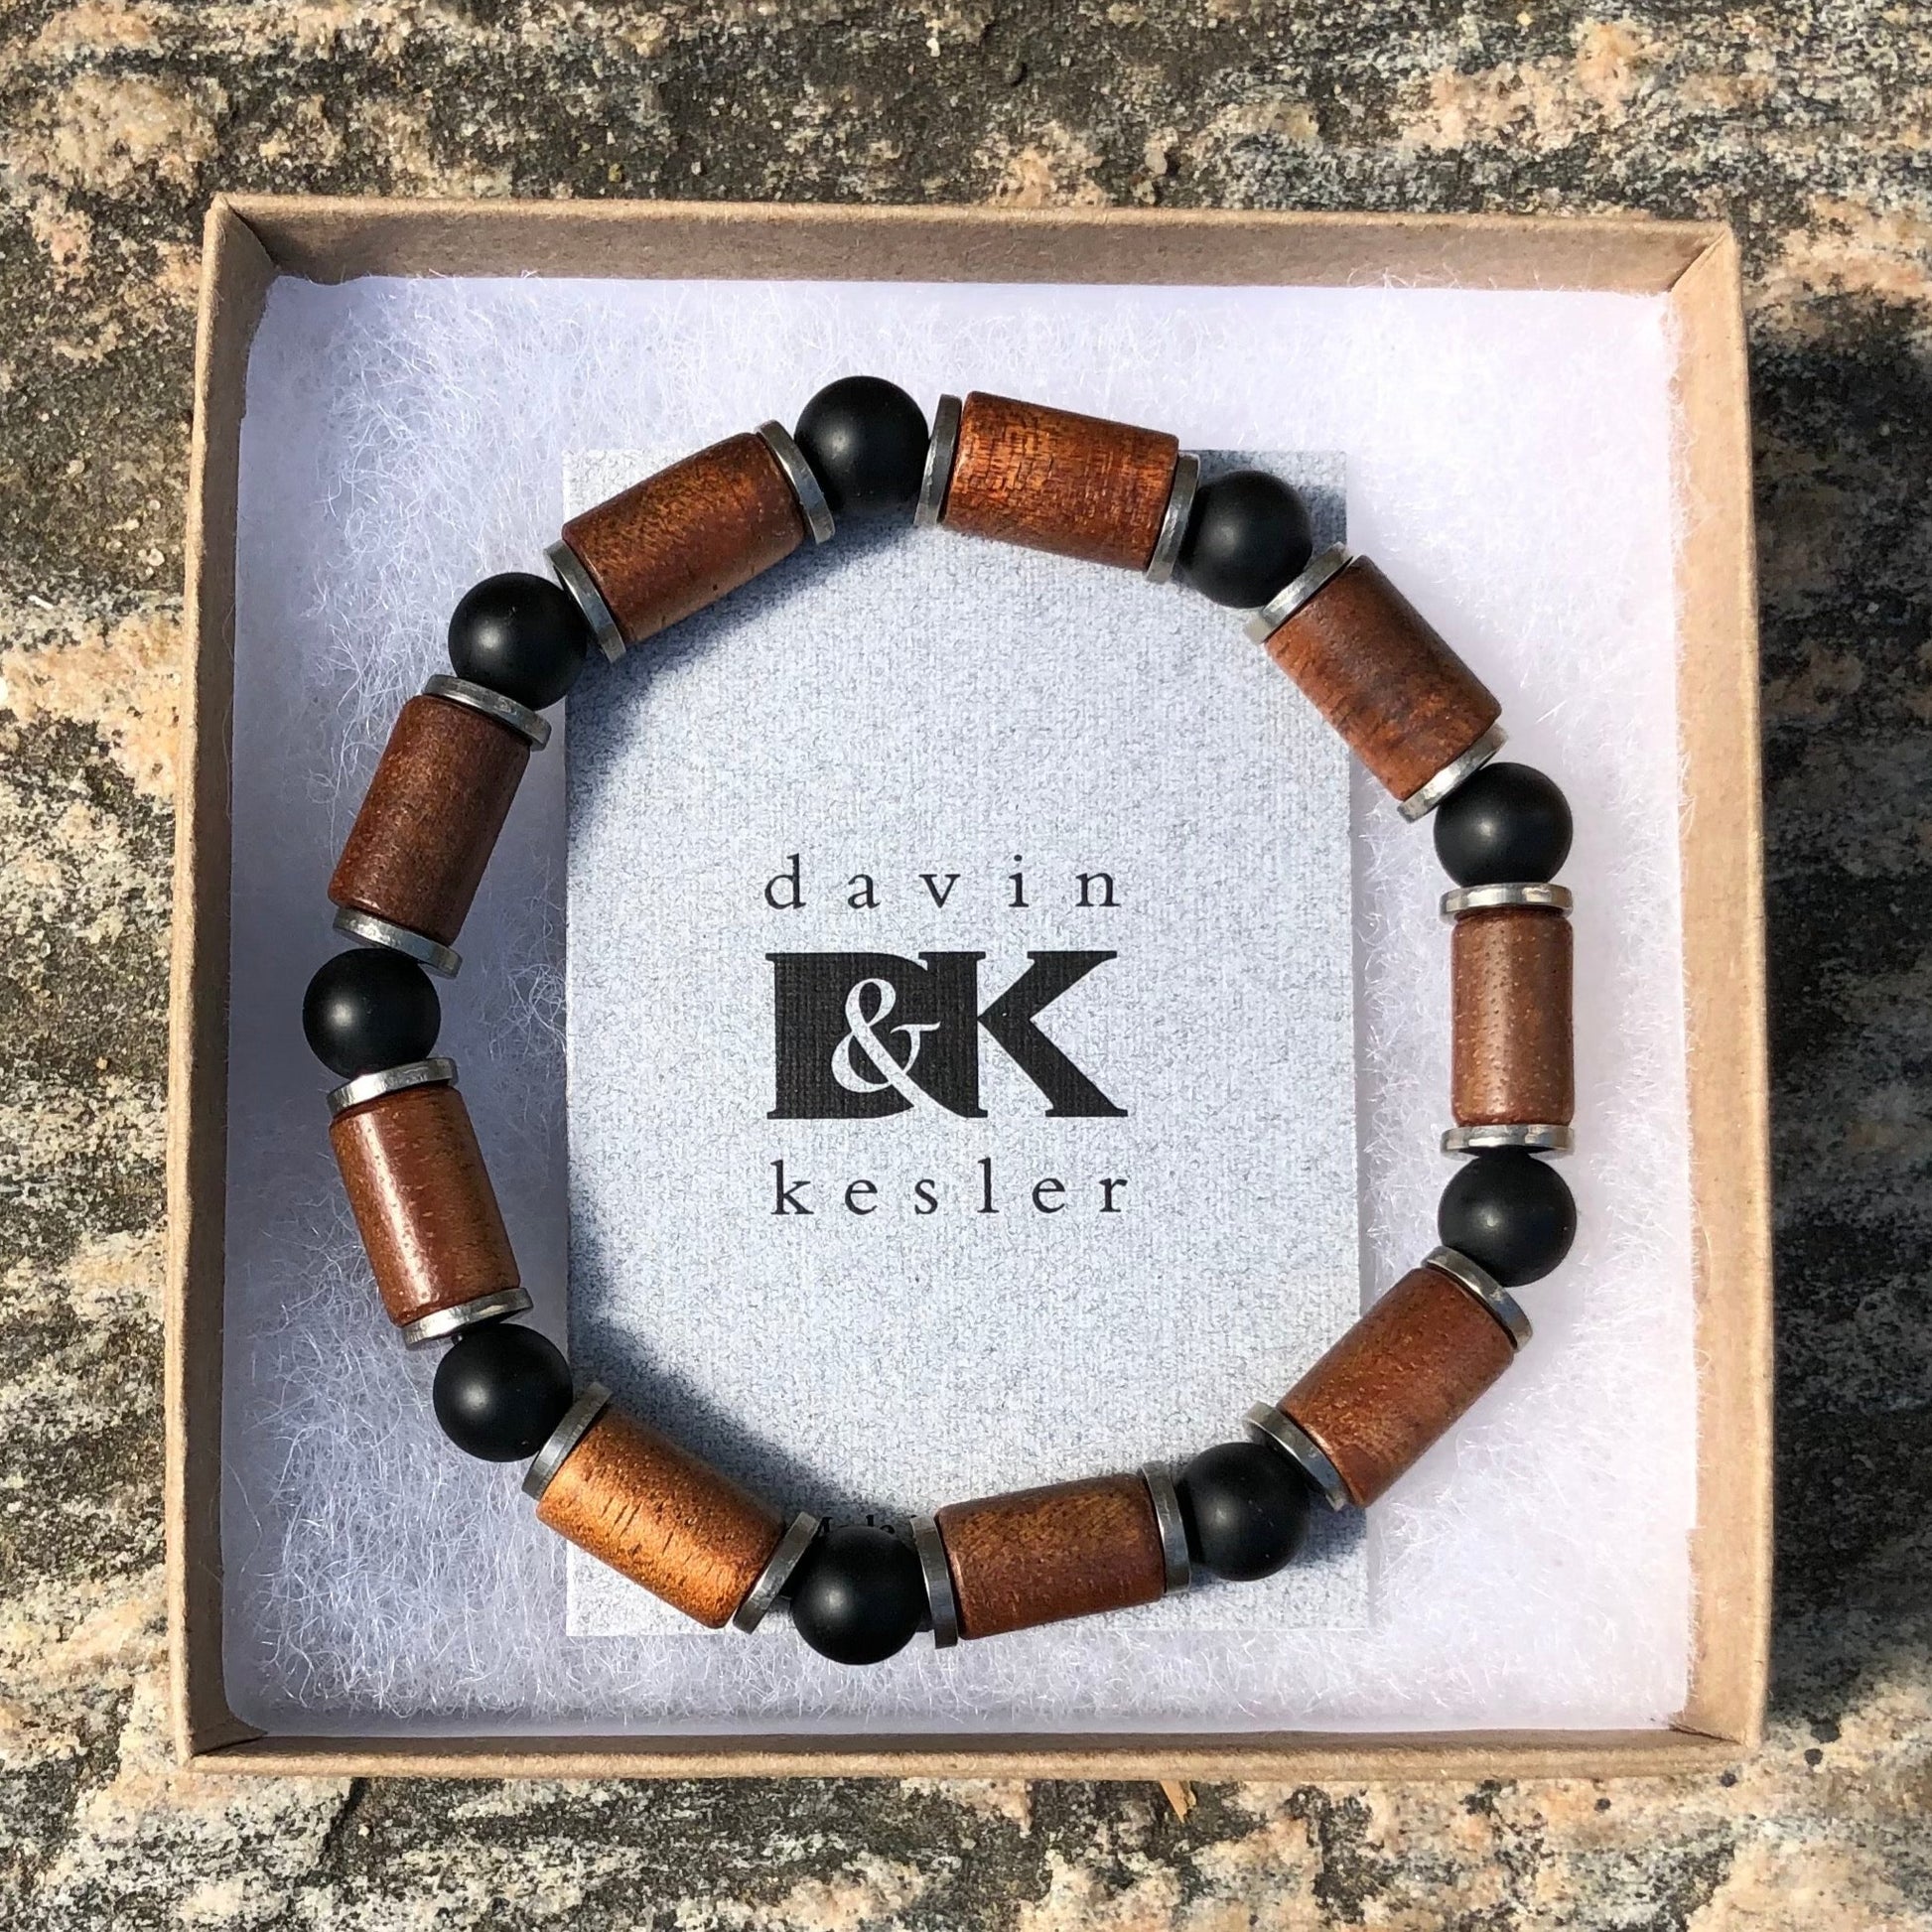 Wooden Beads Bracelet